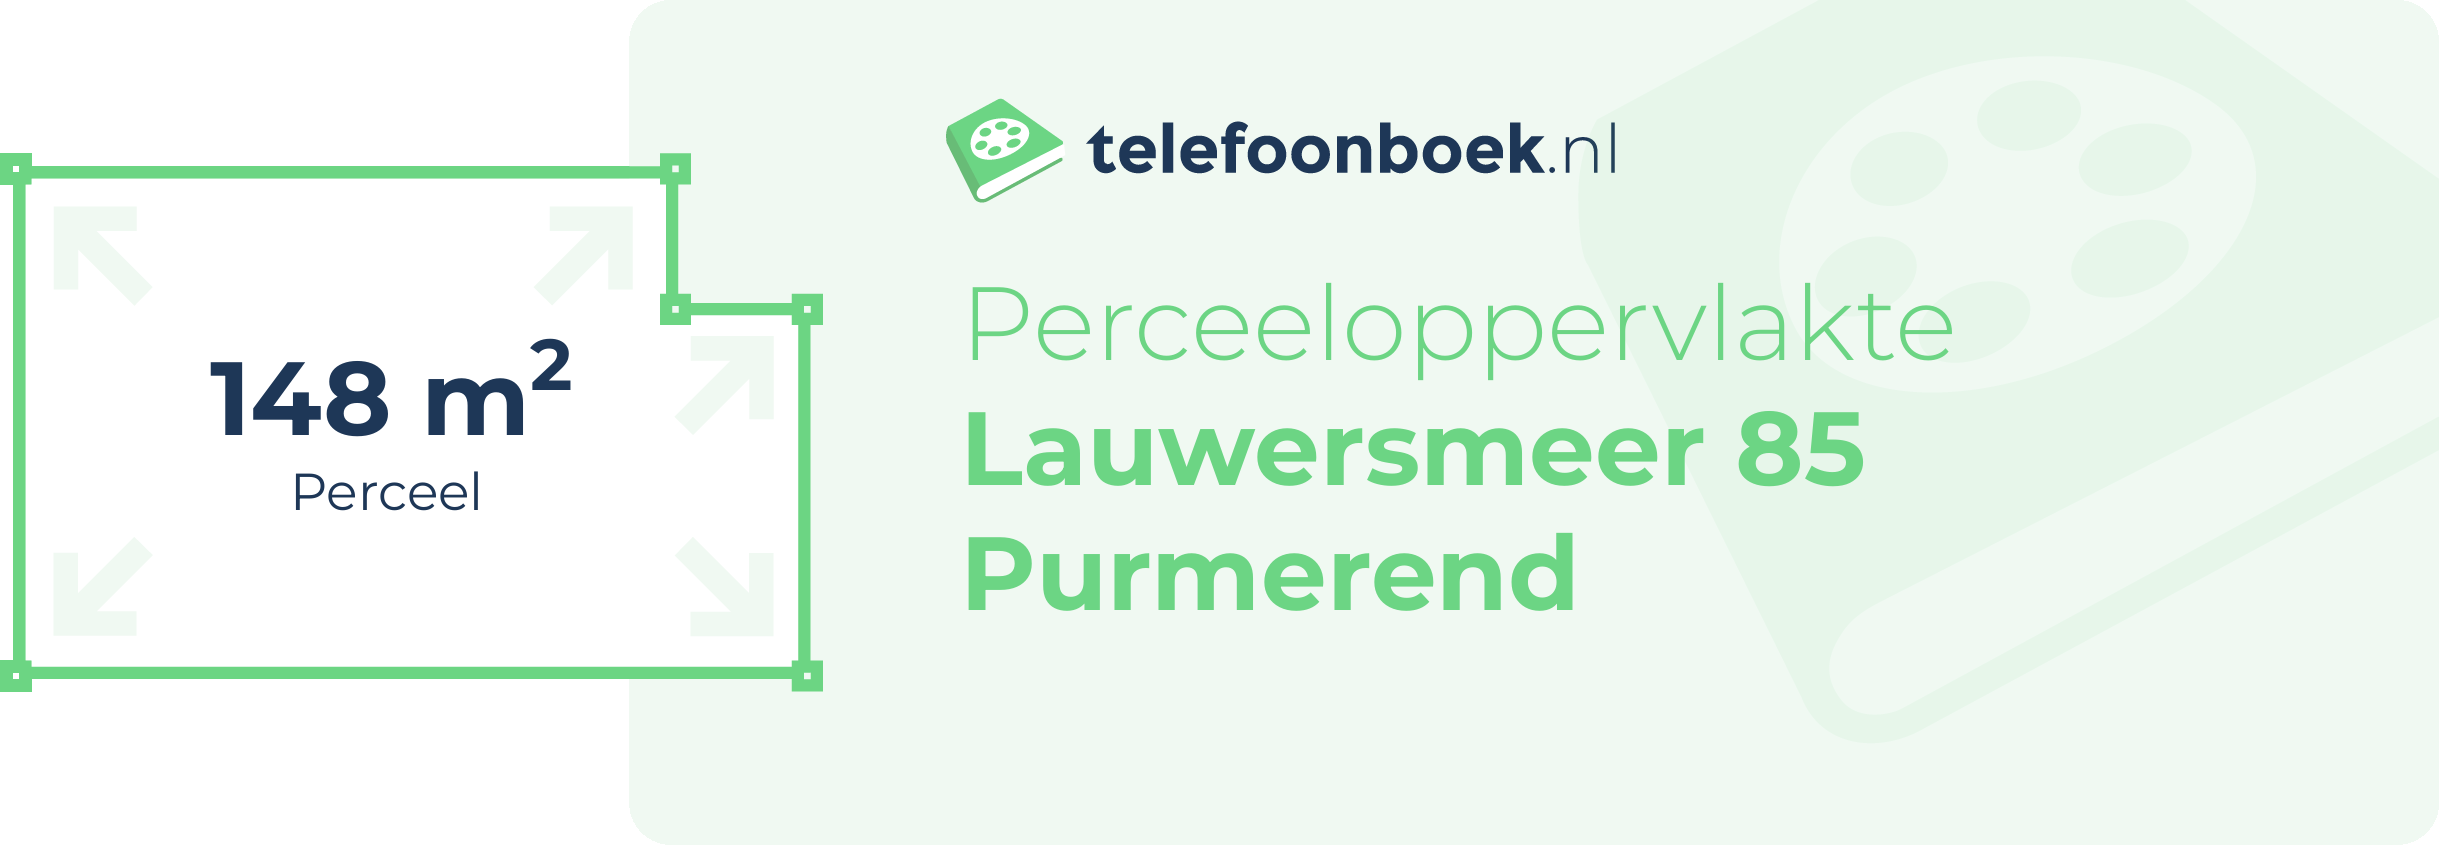 Perceeloppervlakte Lauwersmeer 85 Purmerend